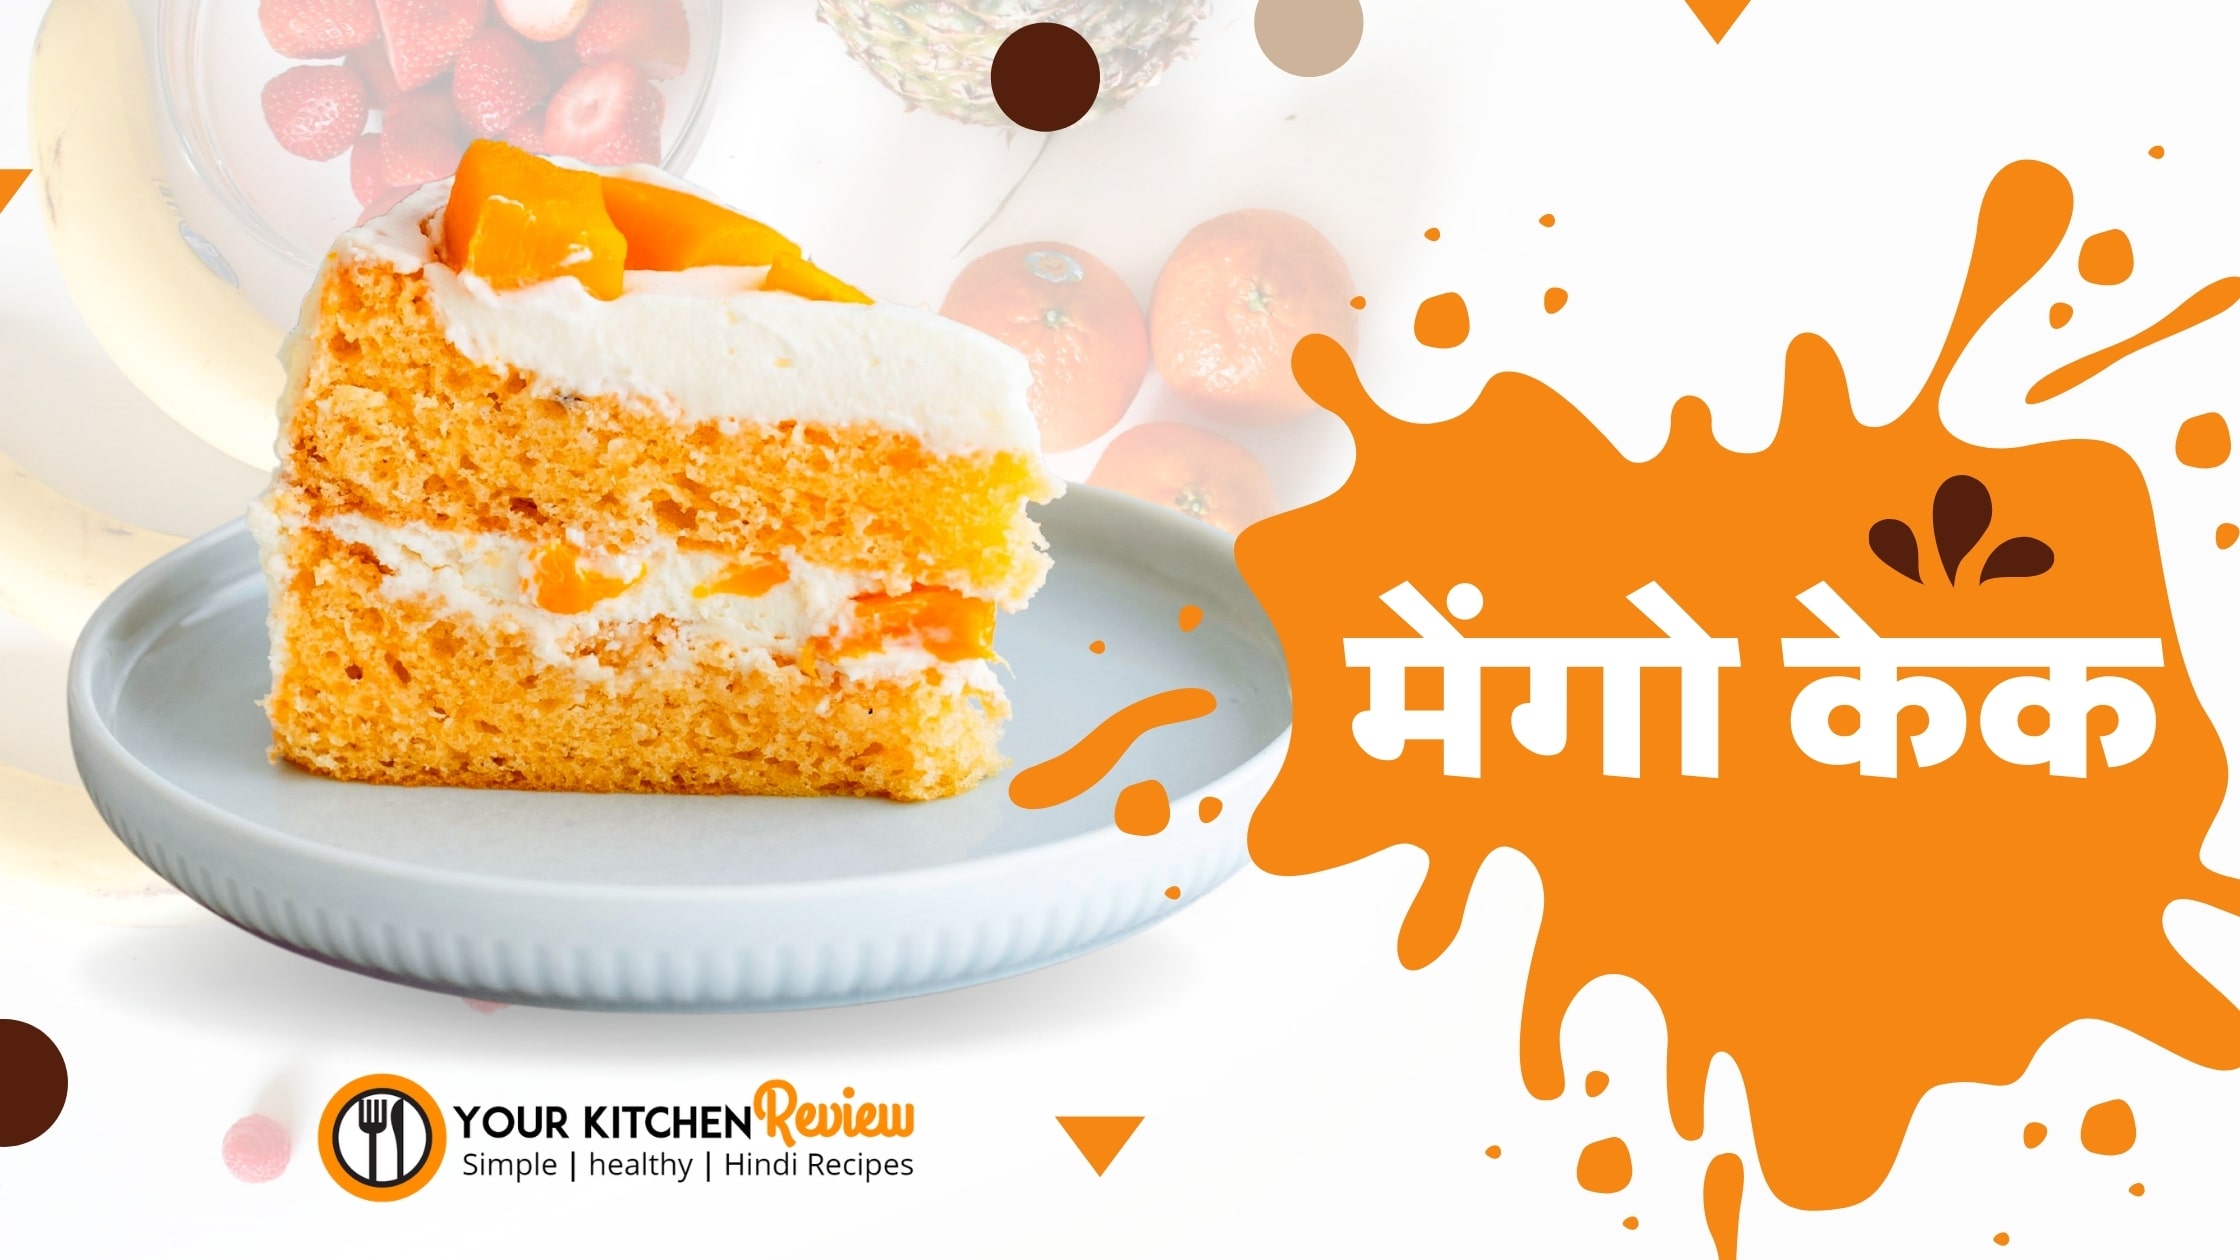 egg less mango cake recipe in Hindi – मेंगो केक की रेसिपी हिंदी में